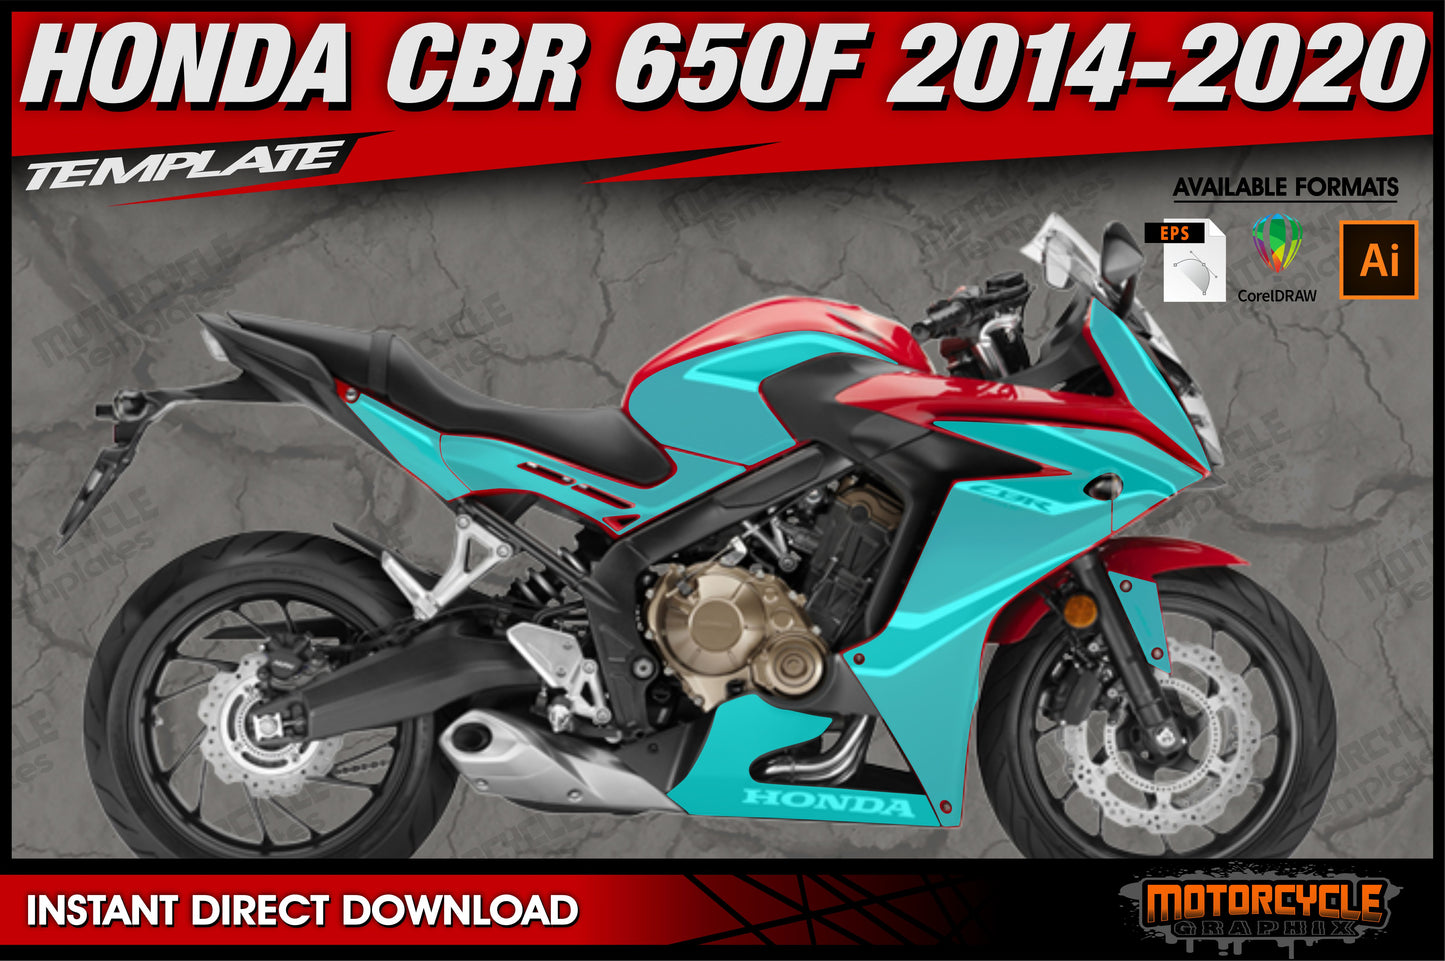 HONDA CBR 650 F 2014-2020